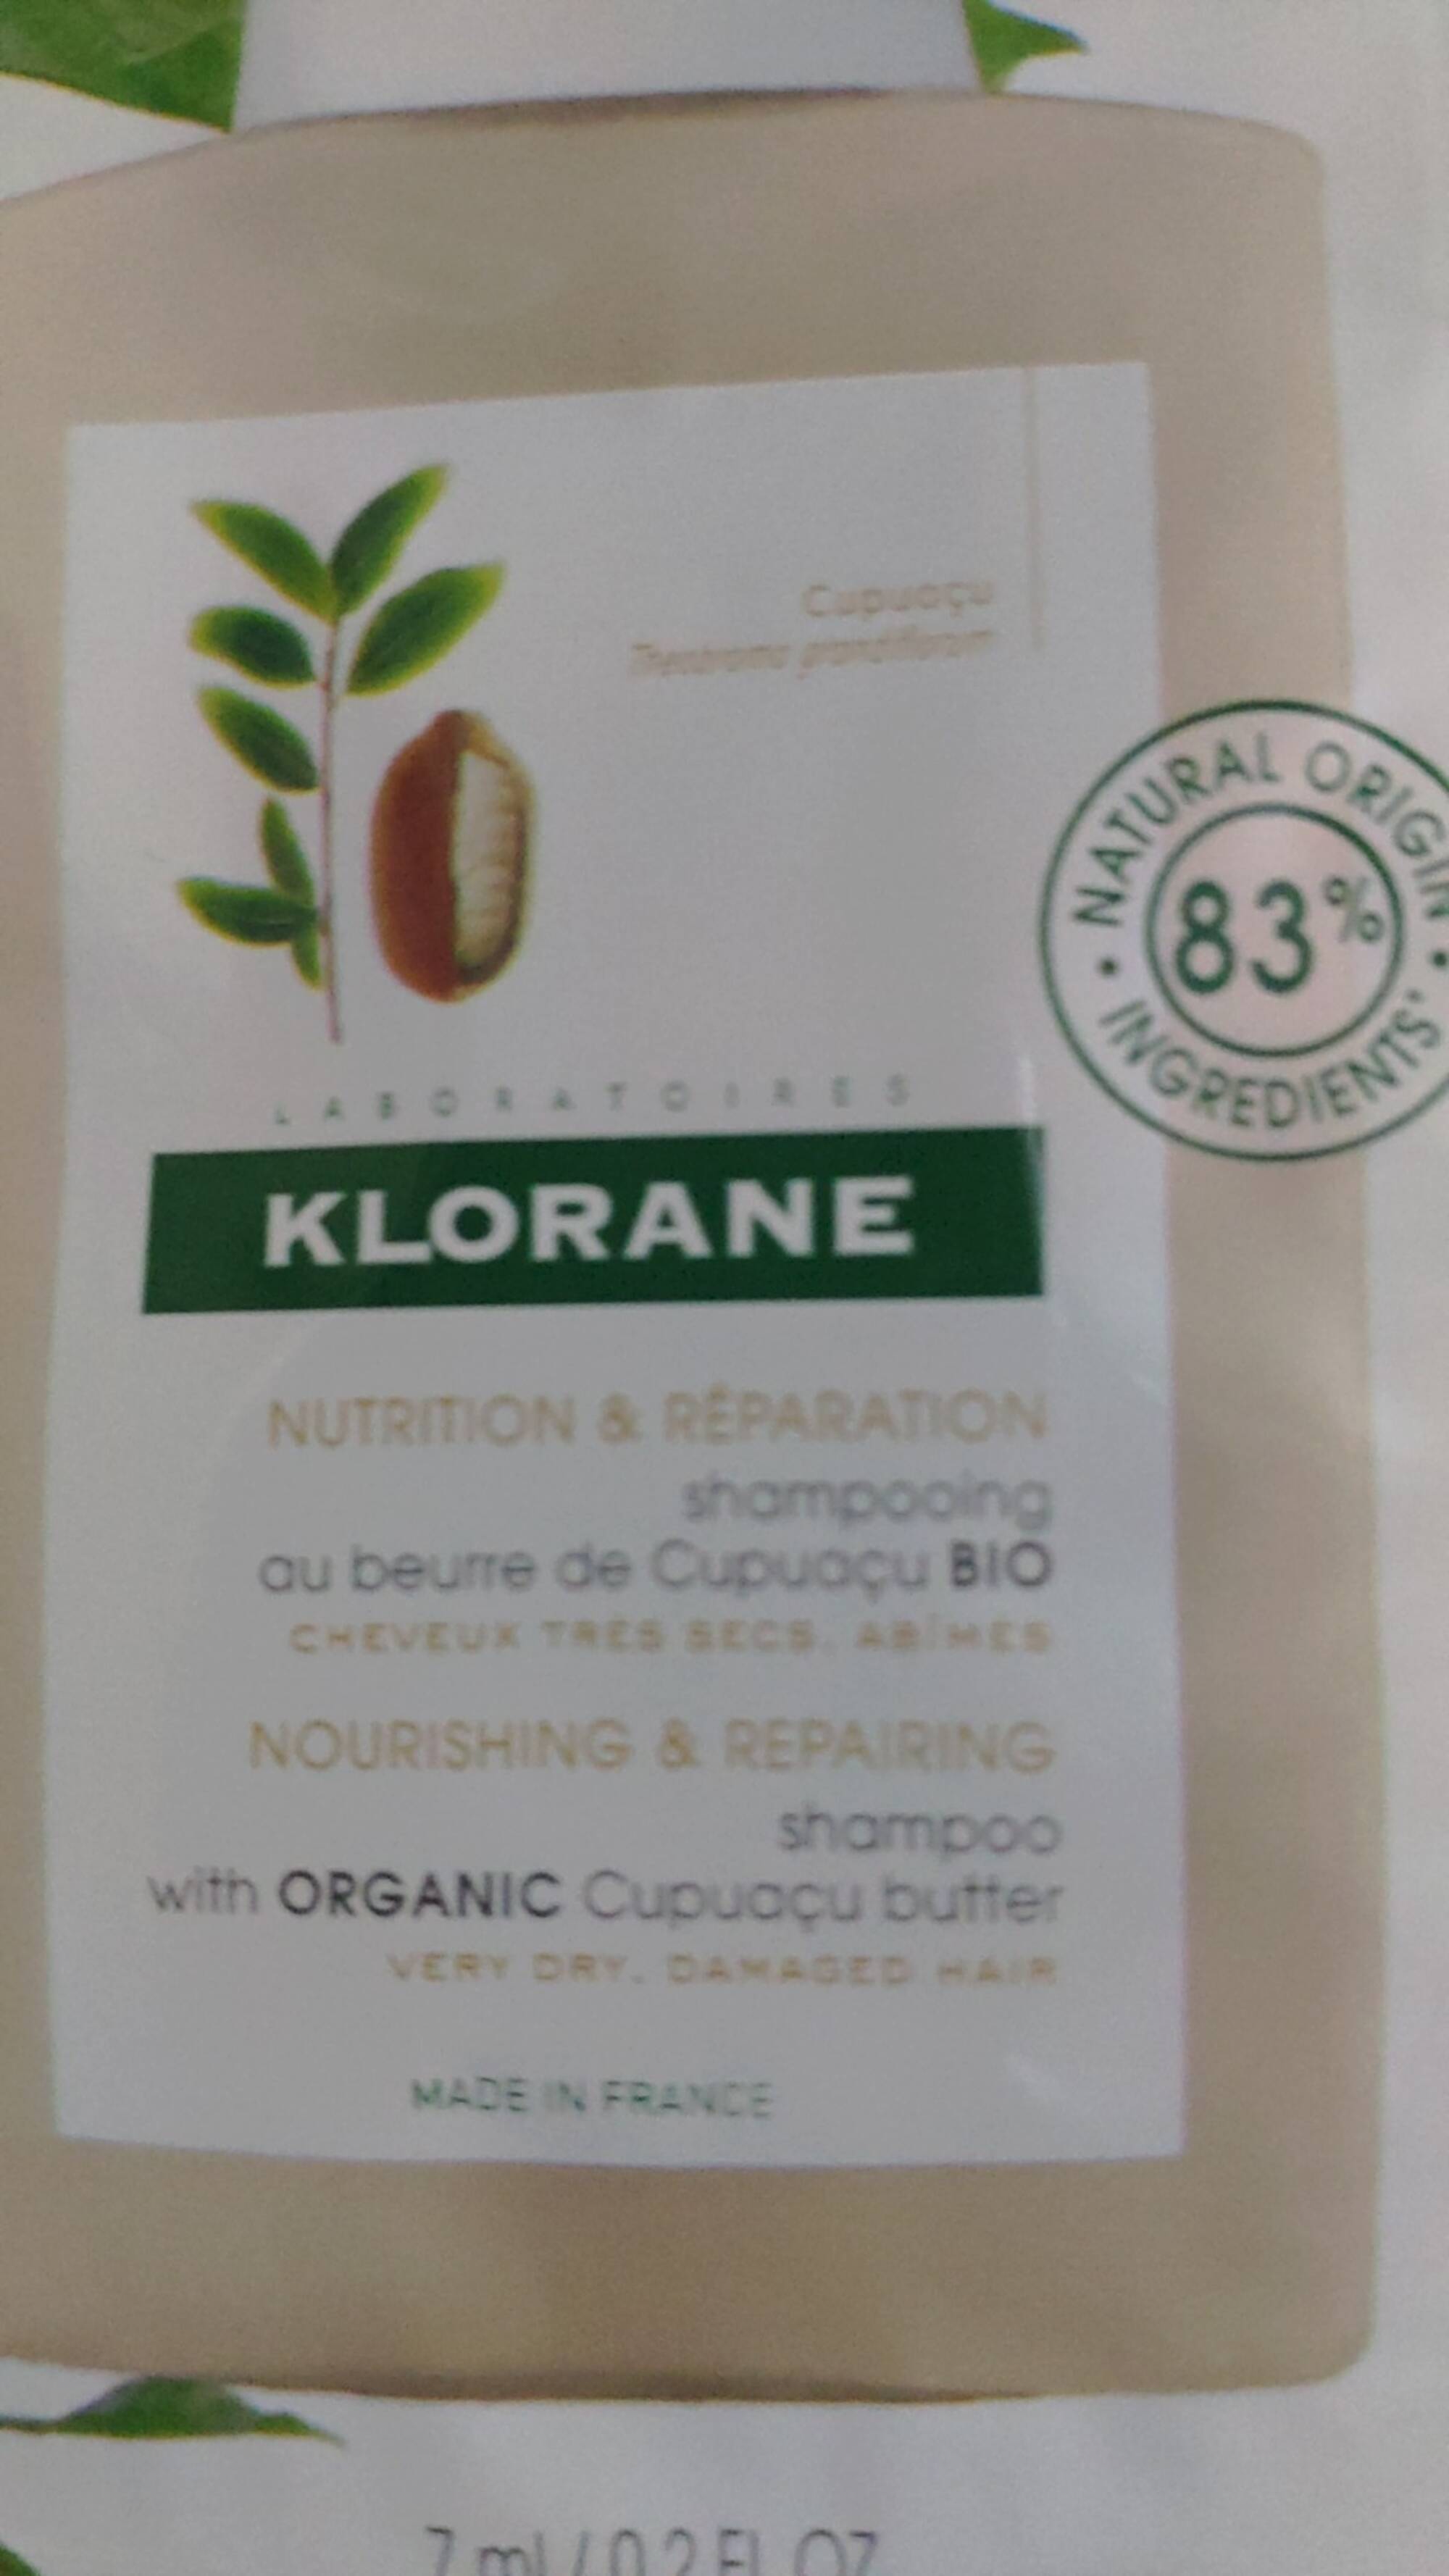 KLORANE - Nutrition & Réparation - Shampooing au beurre de Cupuaçu Bio